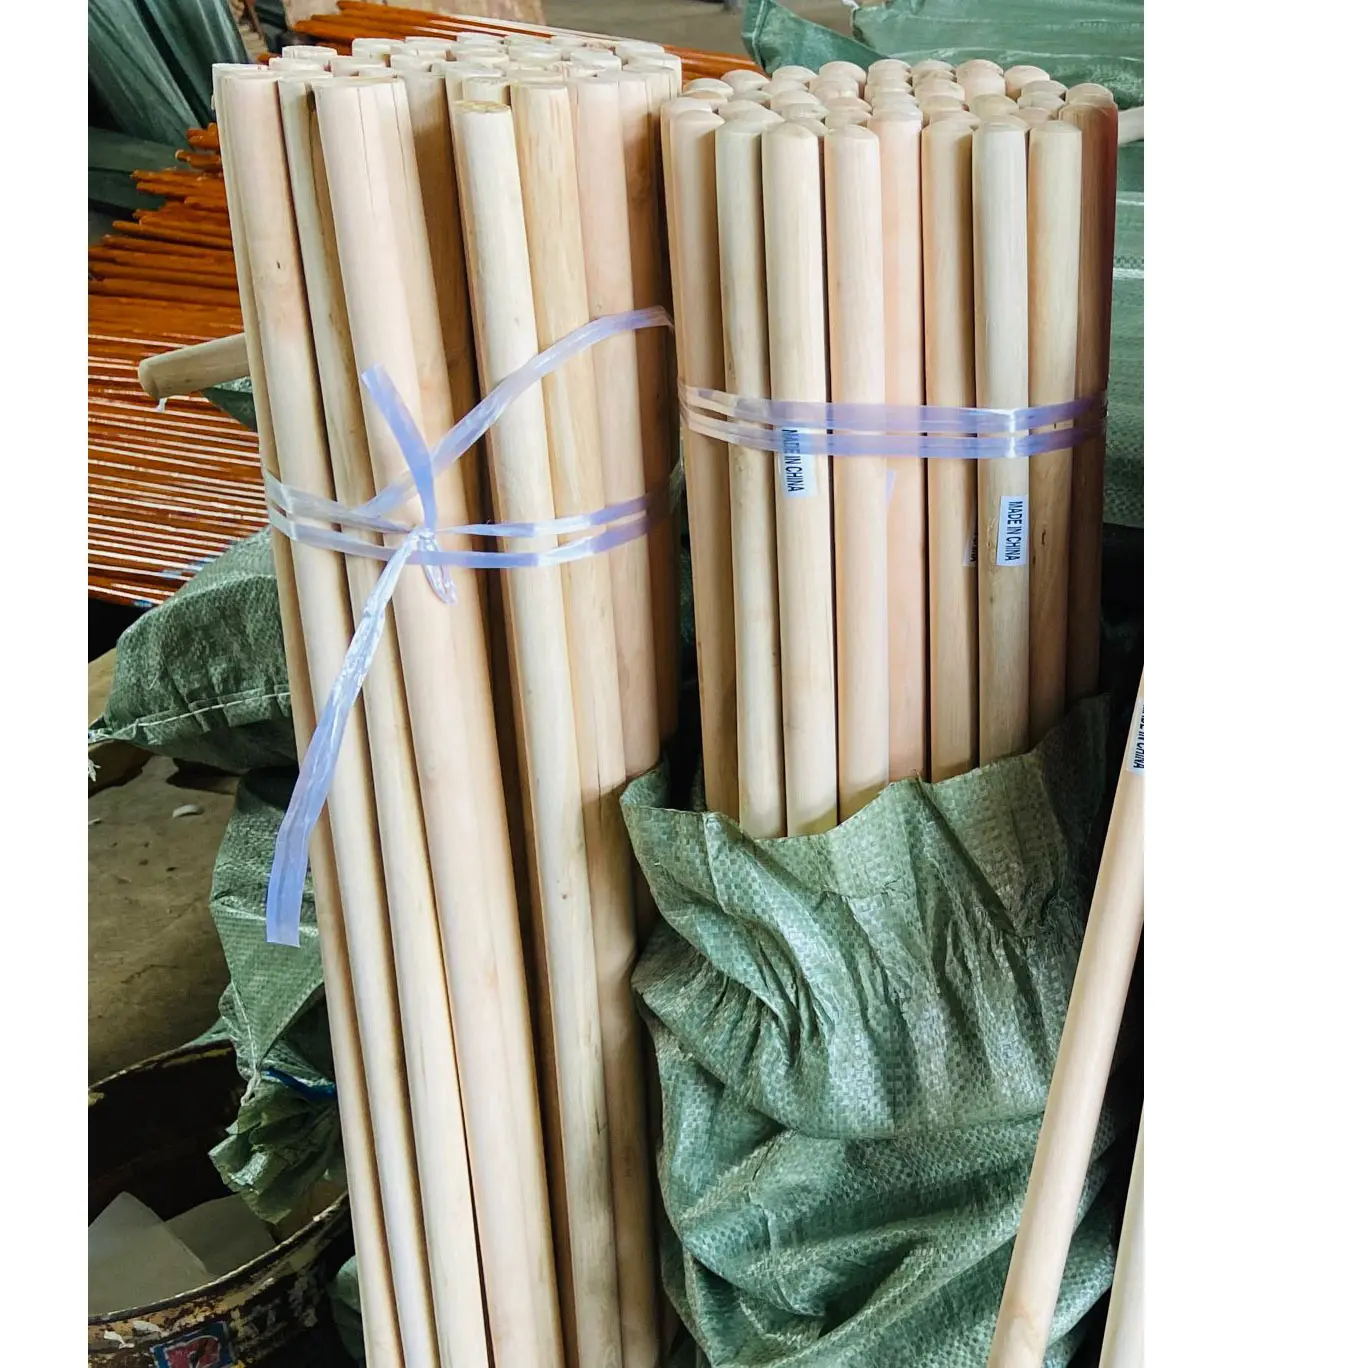 Оптовая продажа, высокое качество, сделанная на заказ, Индонезийская Кокосовая метла, деревянная метла, палка в Турции